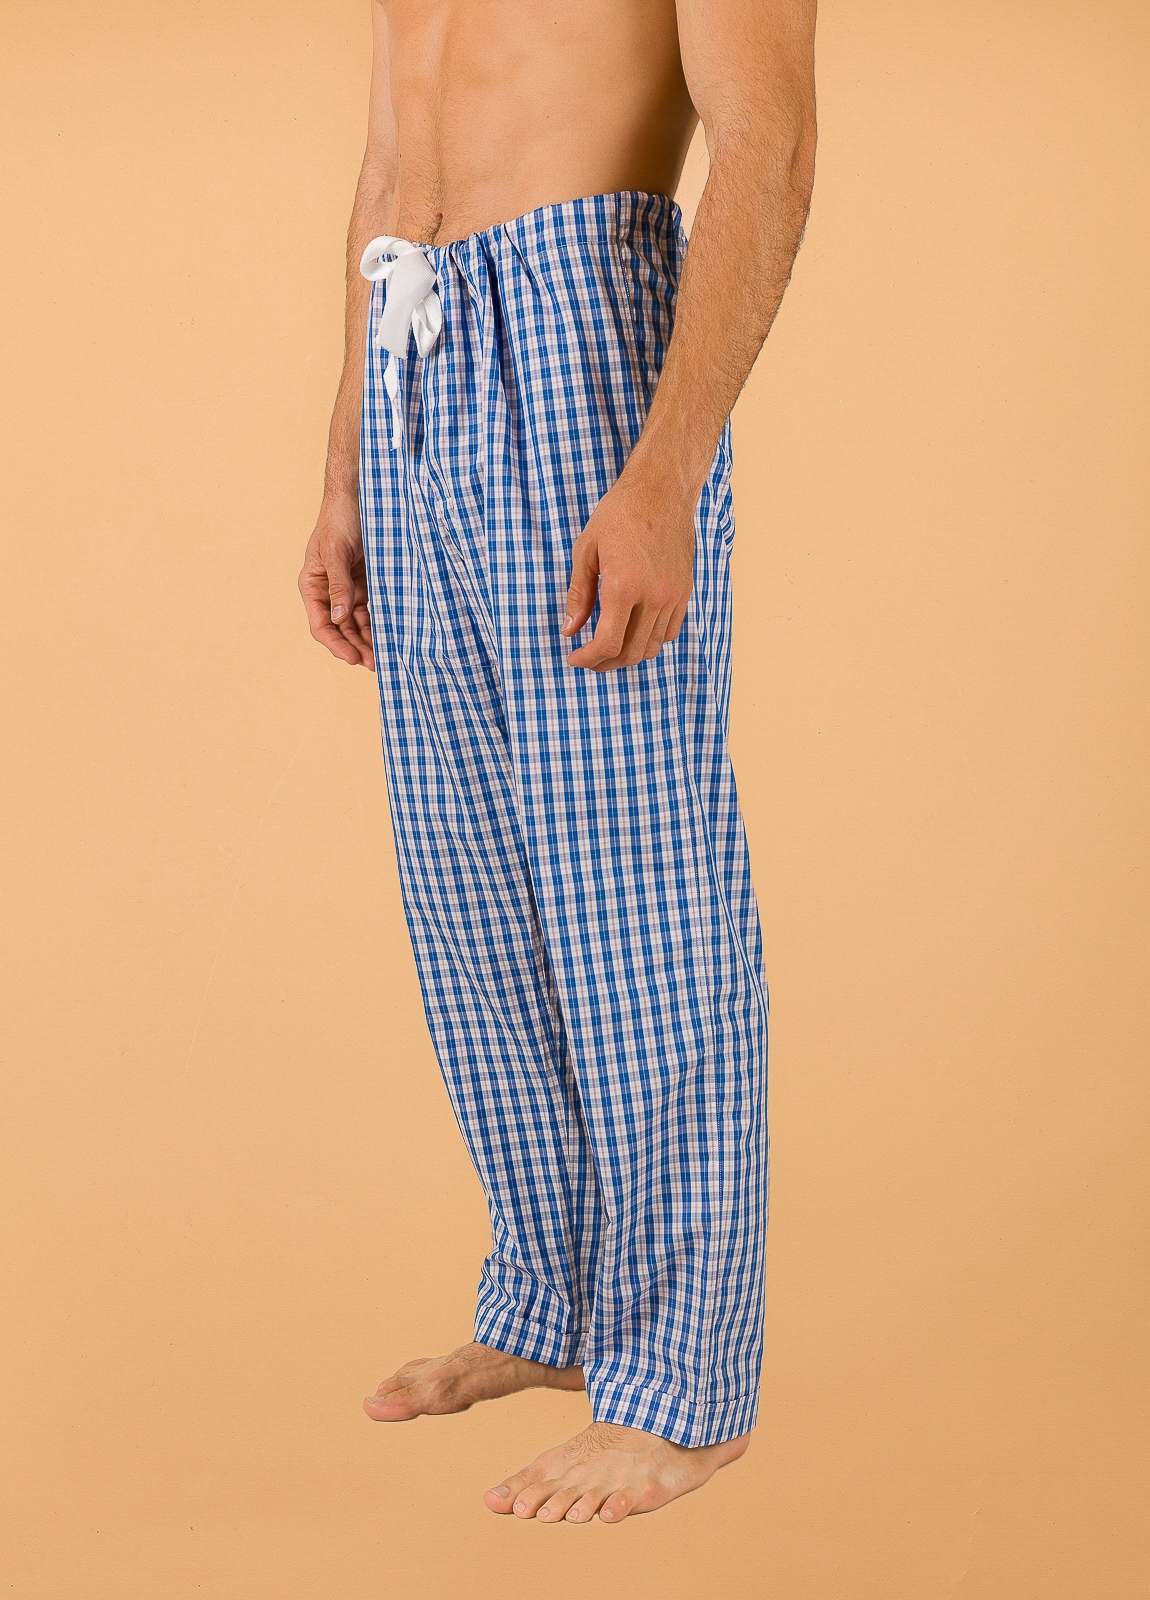 Pantalón largo de Pijama FUREST COLECCIÓN cuadros azul con funda incluida - Ítem3